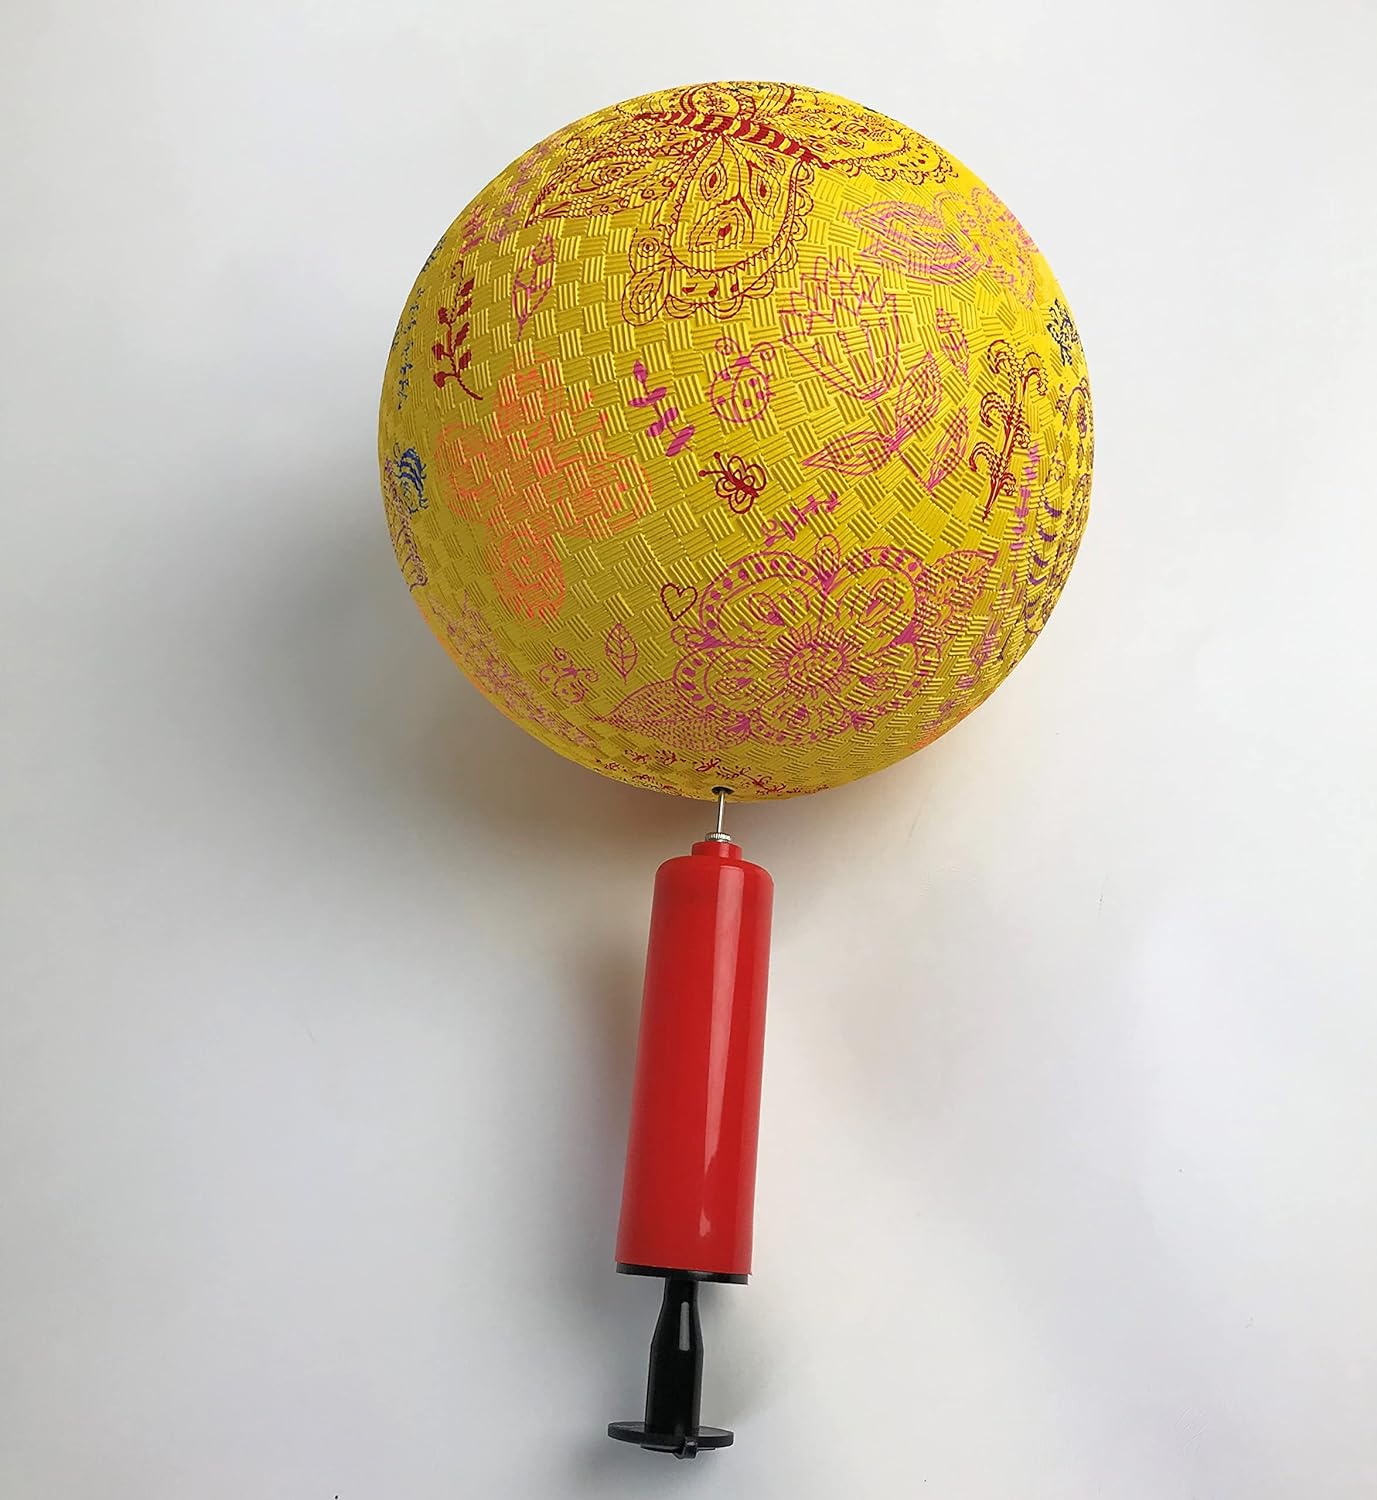 Balón sonoro inflable Pelota con sonido y textura discapacidad visual terapia rehabilitación